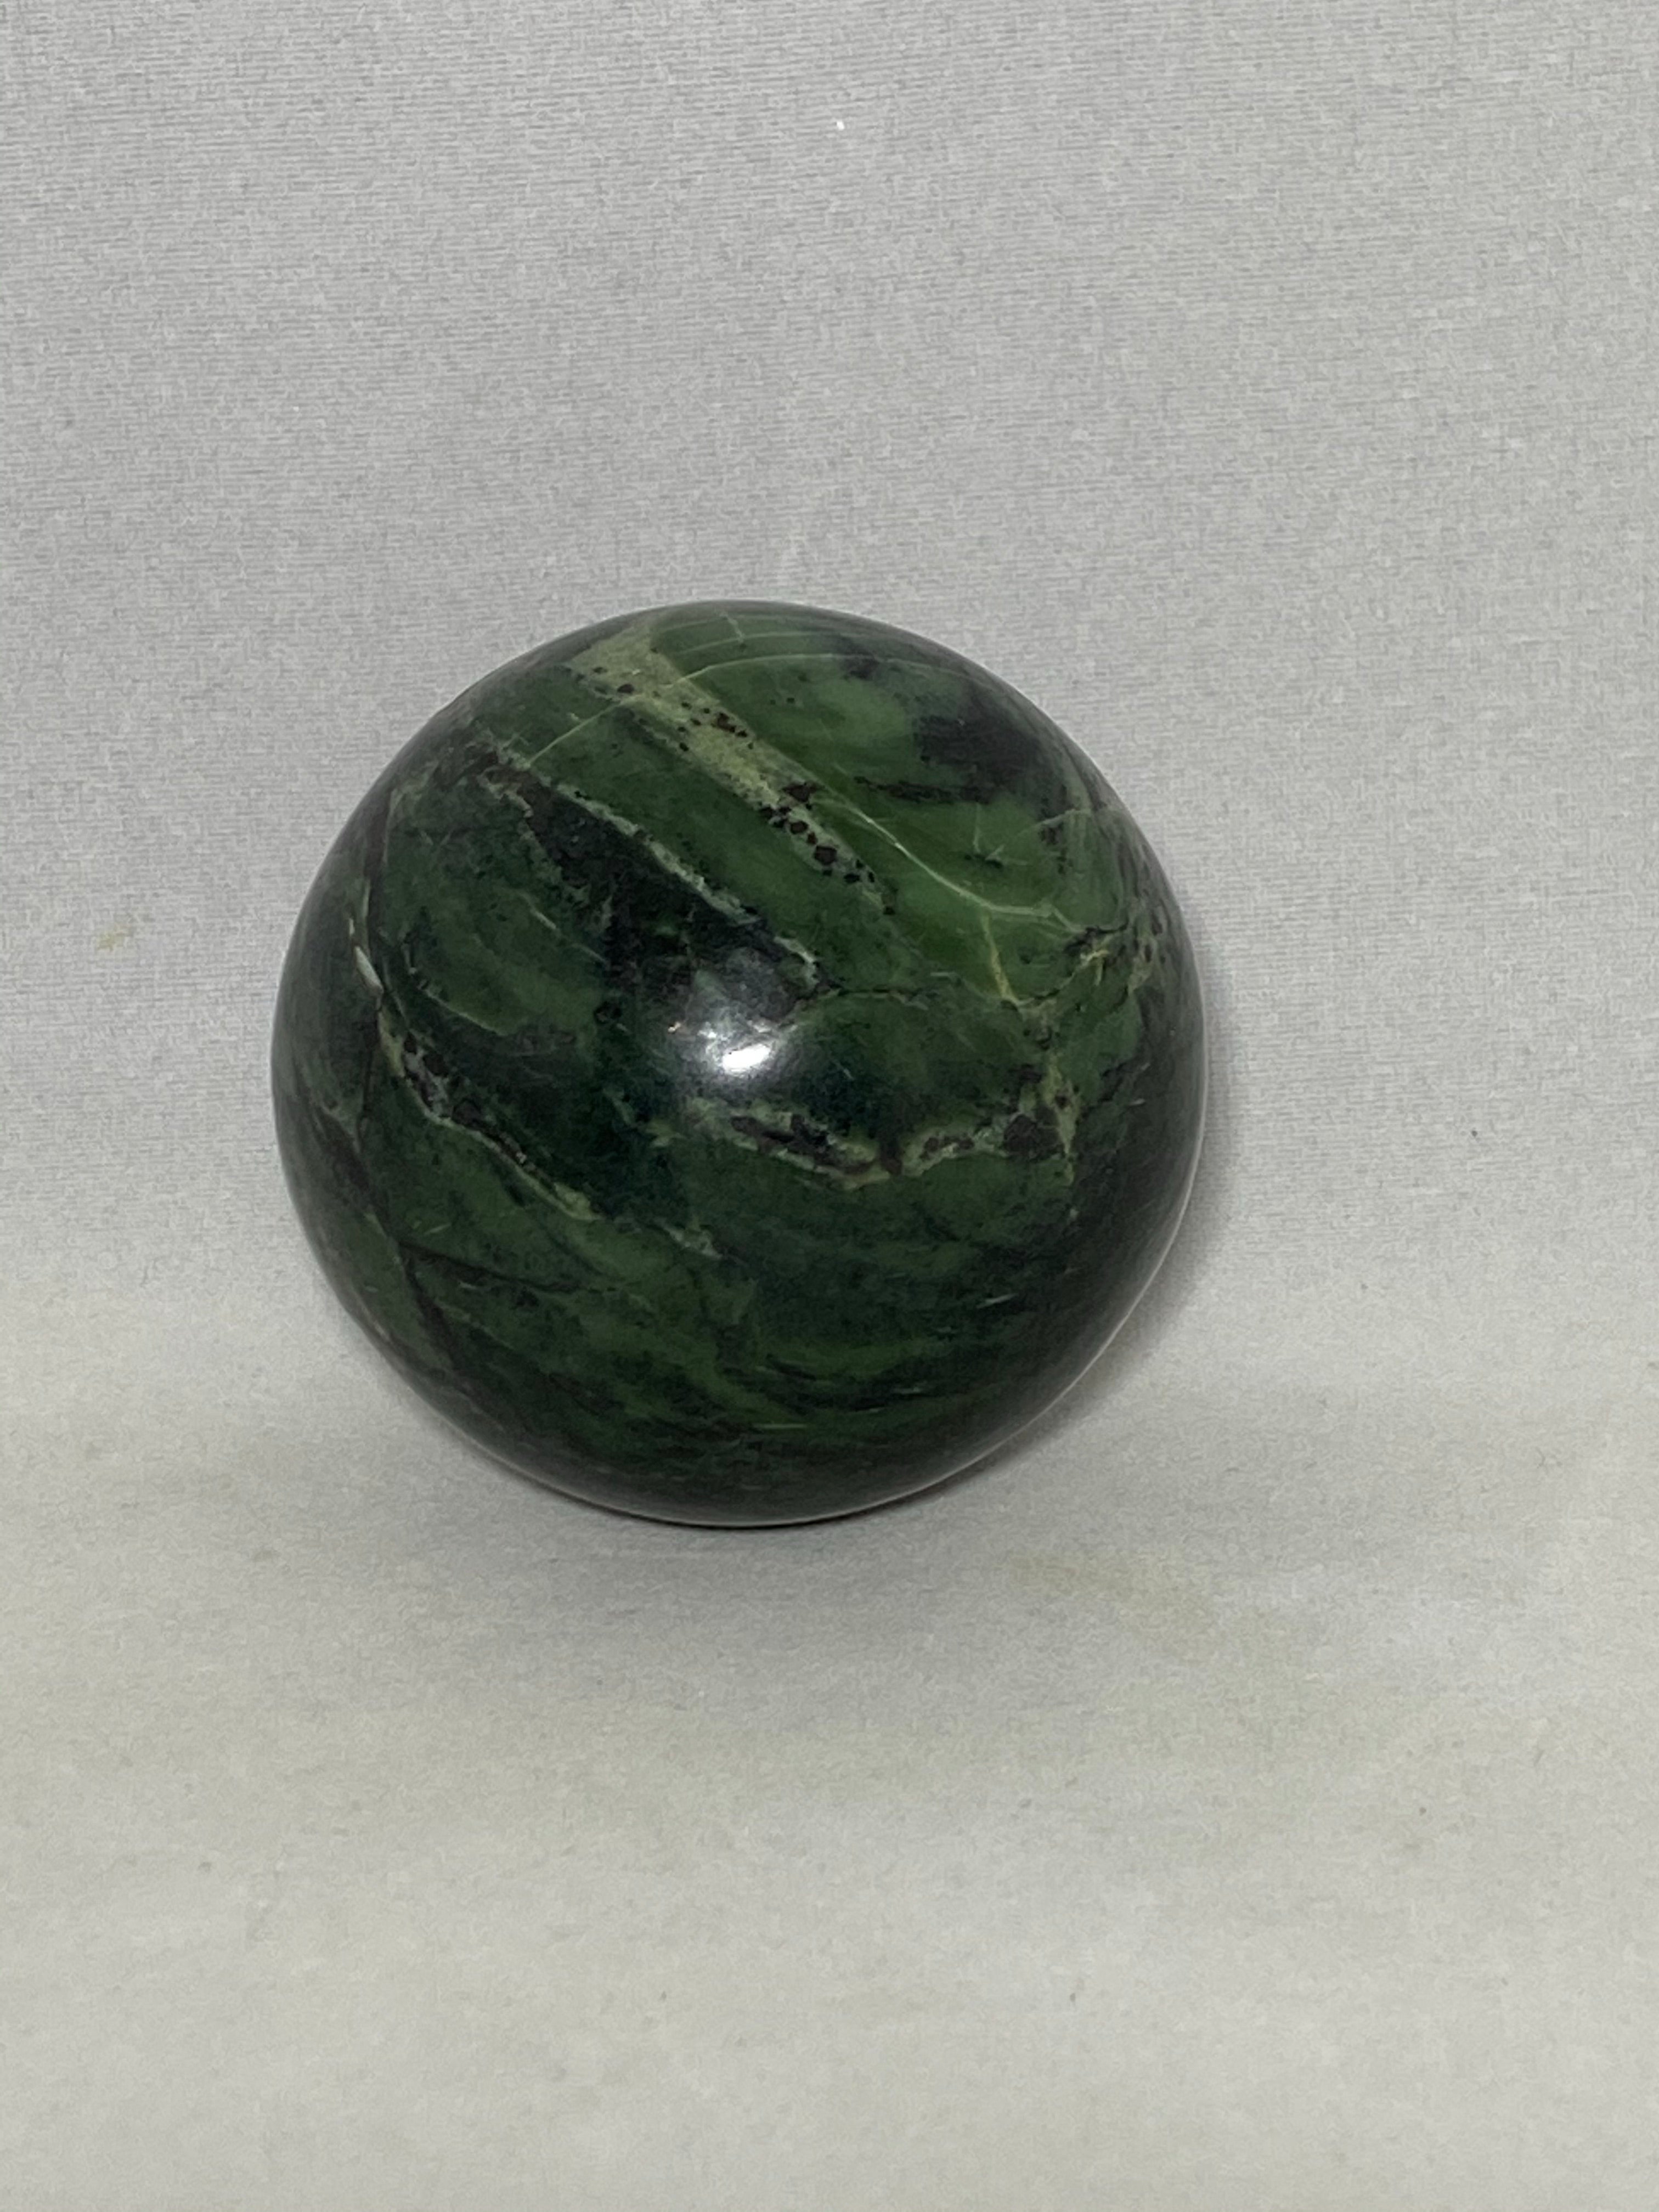 Jade Sphere - Lighten Up Shop